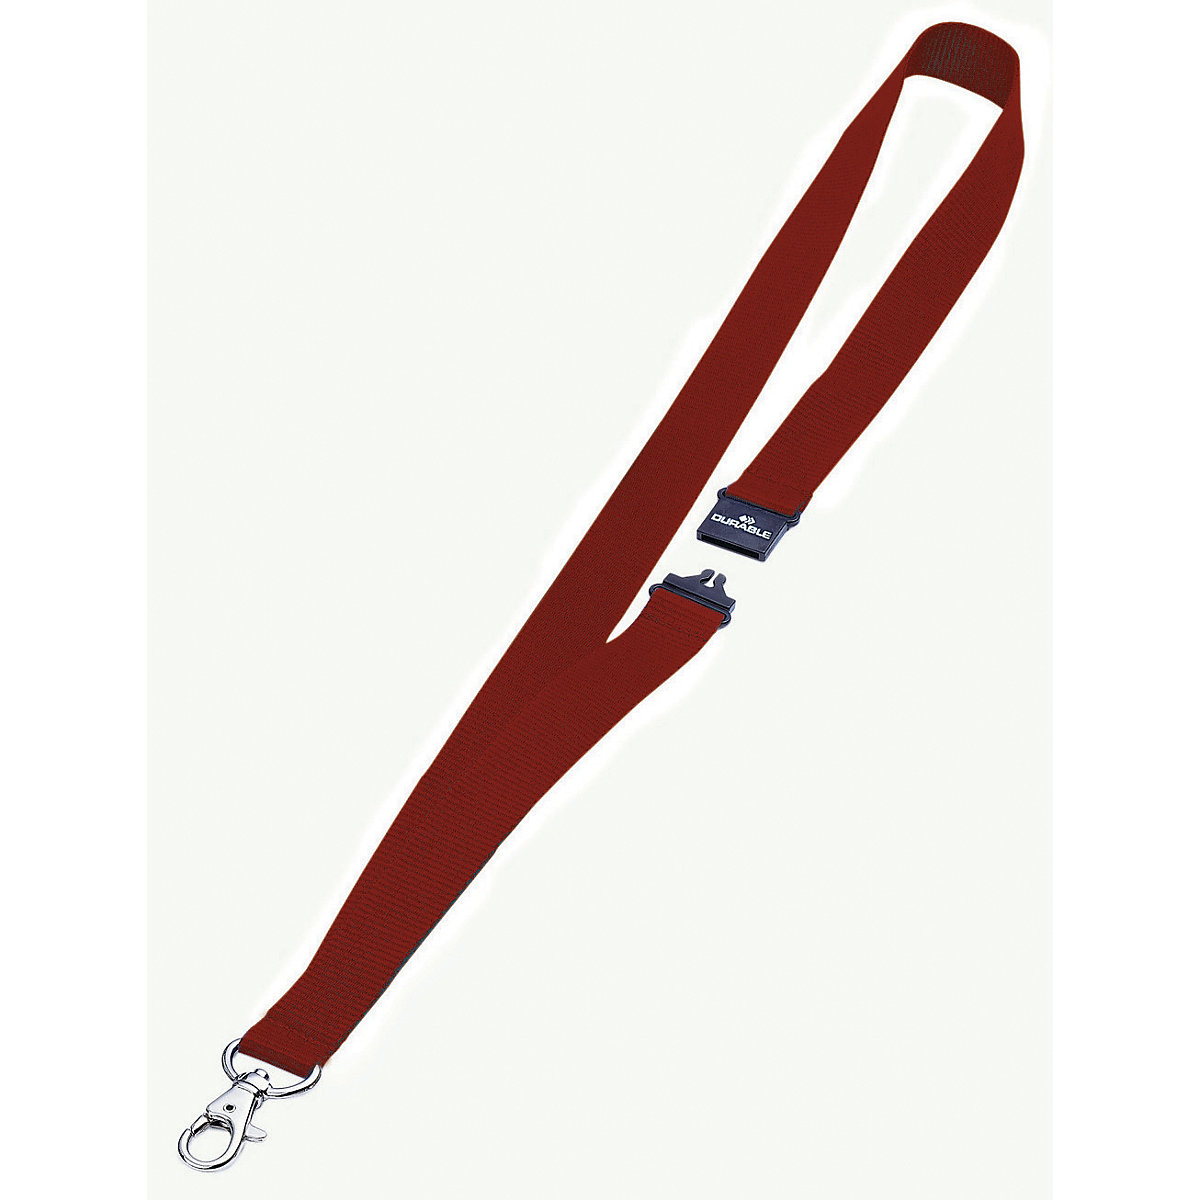 Șnururi textile cu agățătoare tip carabină – DURABLE, închidere de siguranță, amb. 50 buc., roșu-5